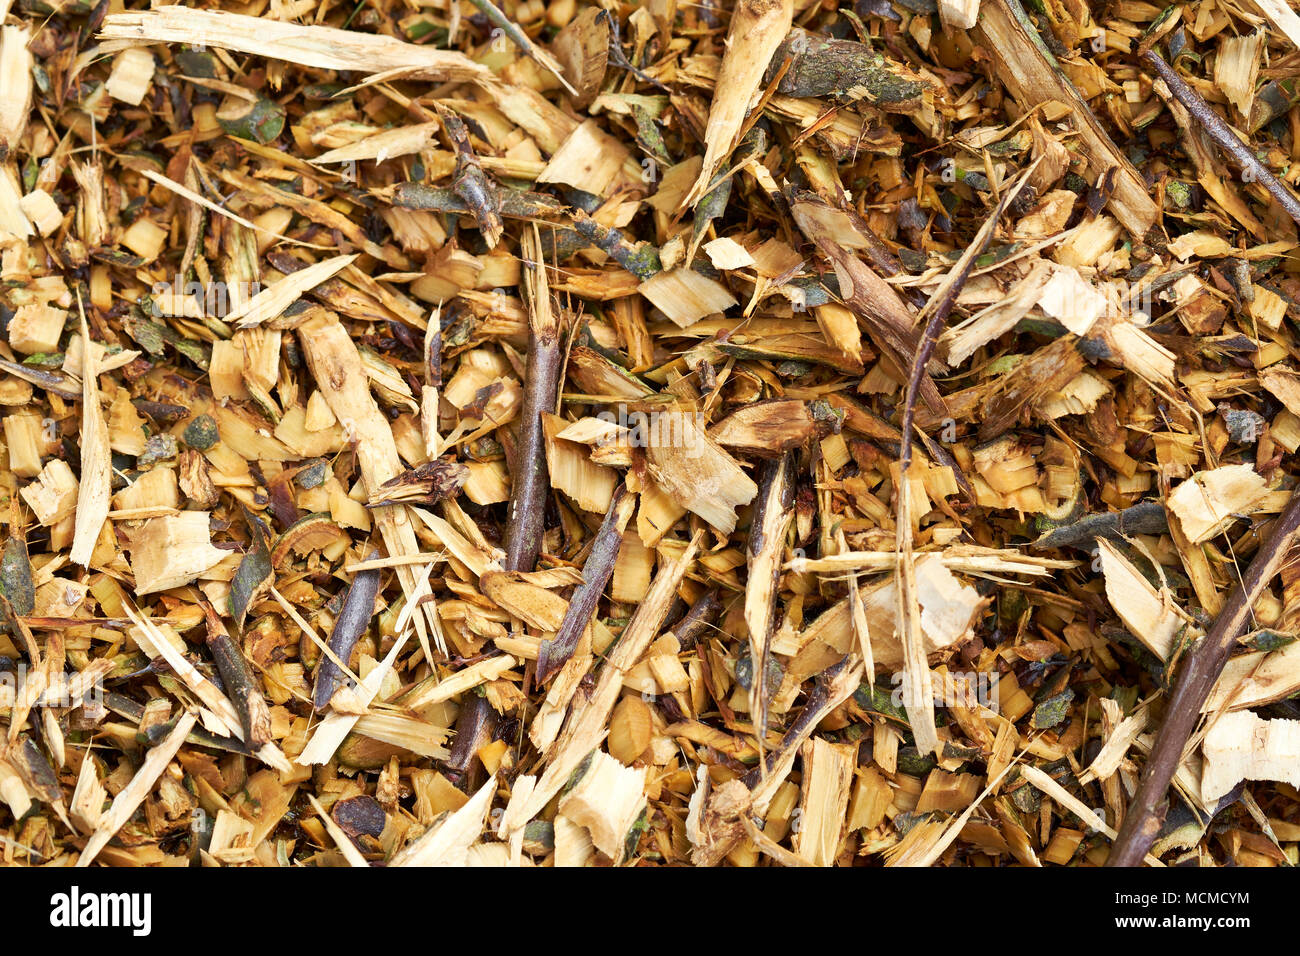 Giardino di telone prodotta da una operazione di triturazione di rifiuti vegetali legnosi residui legnosi, UK. Foto Stock